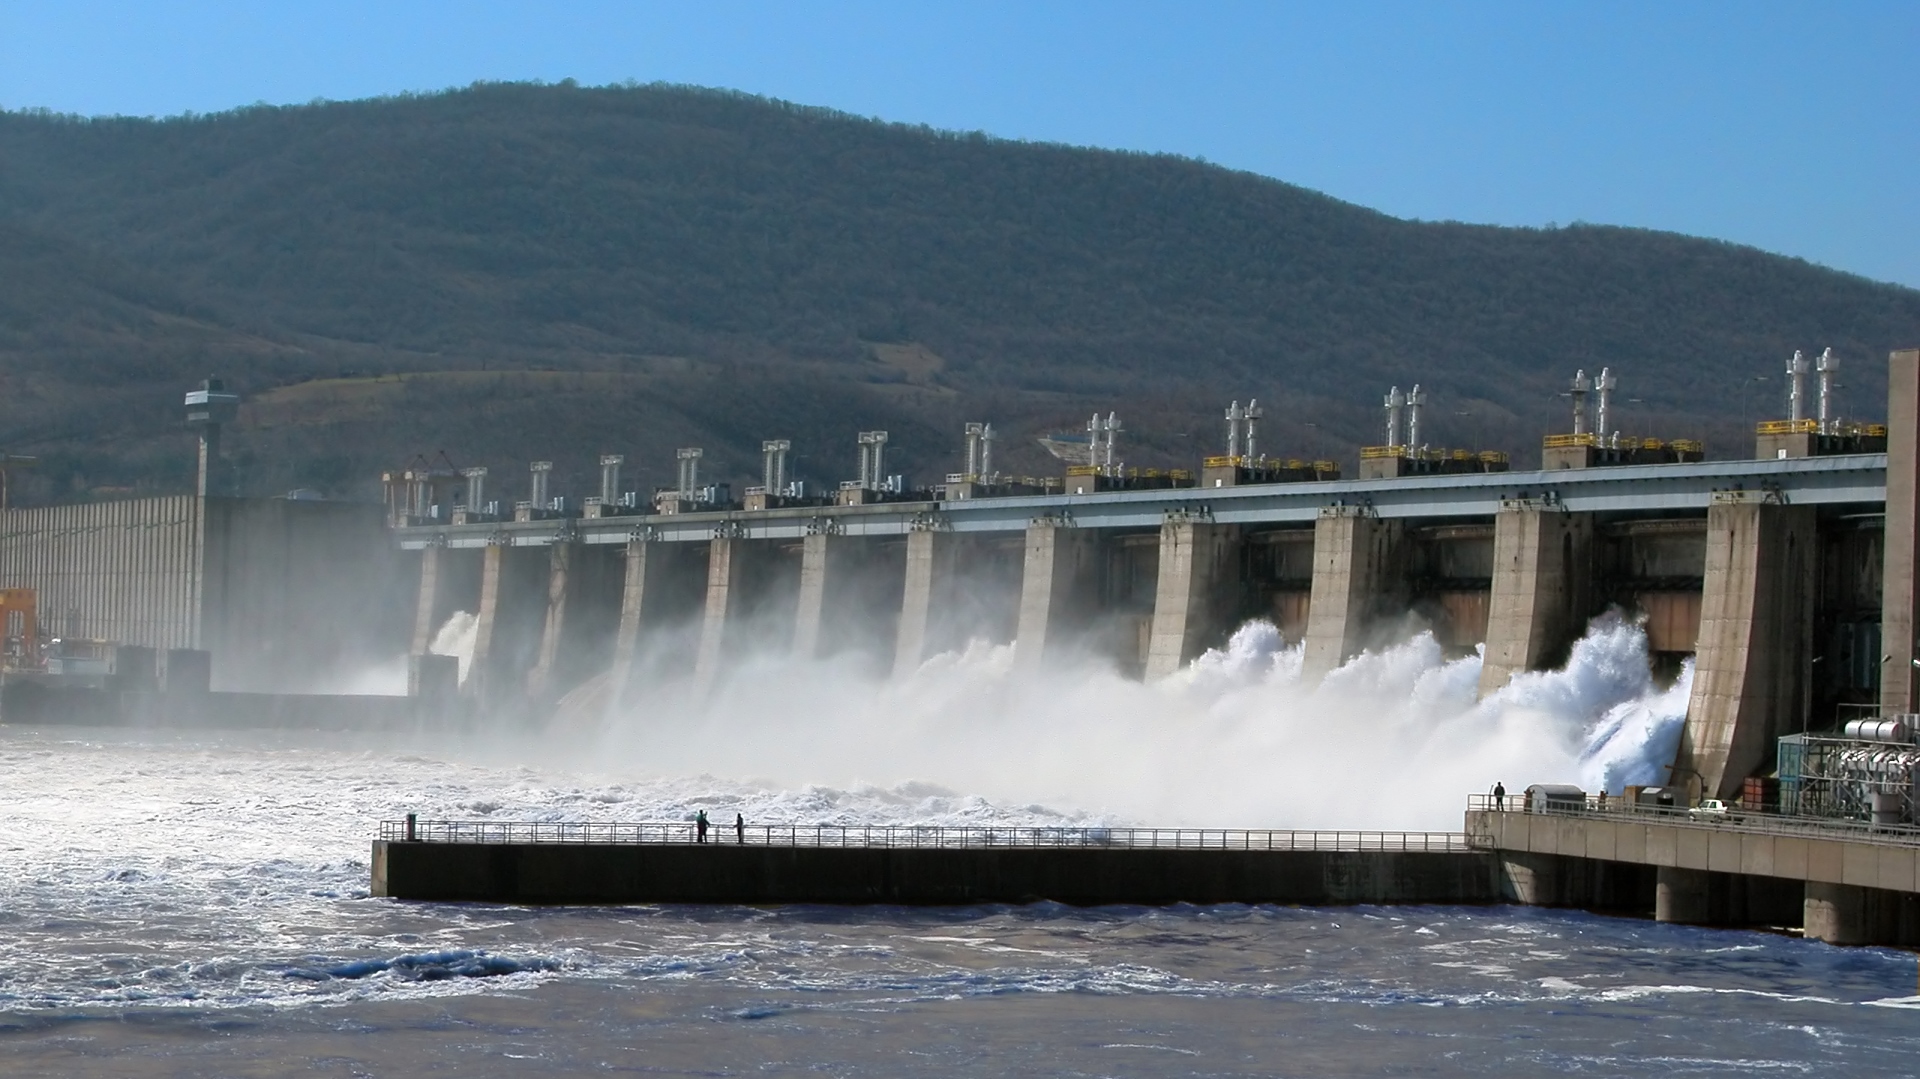 Hidroelectrica a semnat un act adiţional prin care se prelungeşte cu un an acordul cadru cu Hidroserv, subsidiara sa care face lucrări de mentenanţă